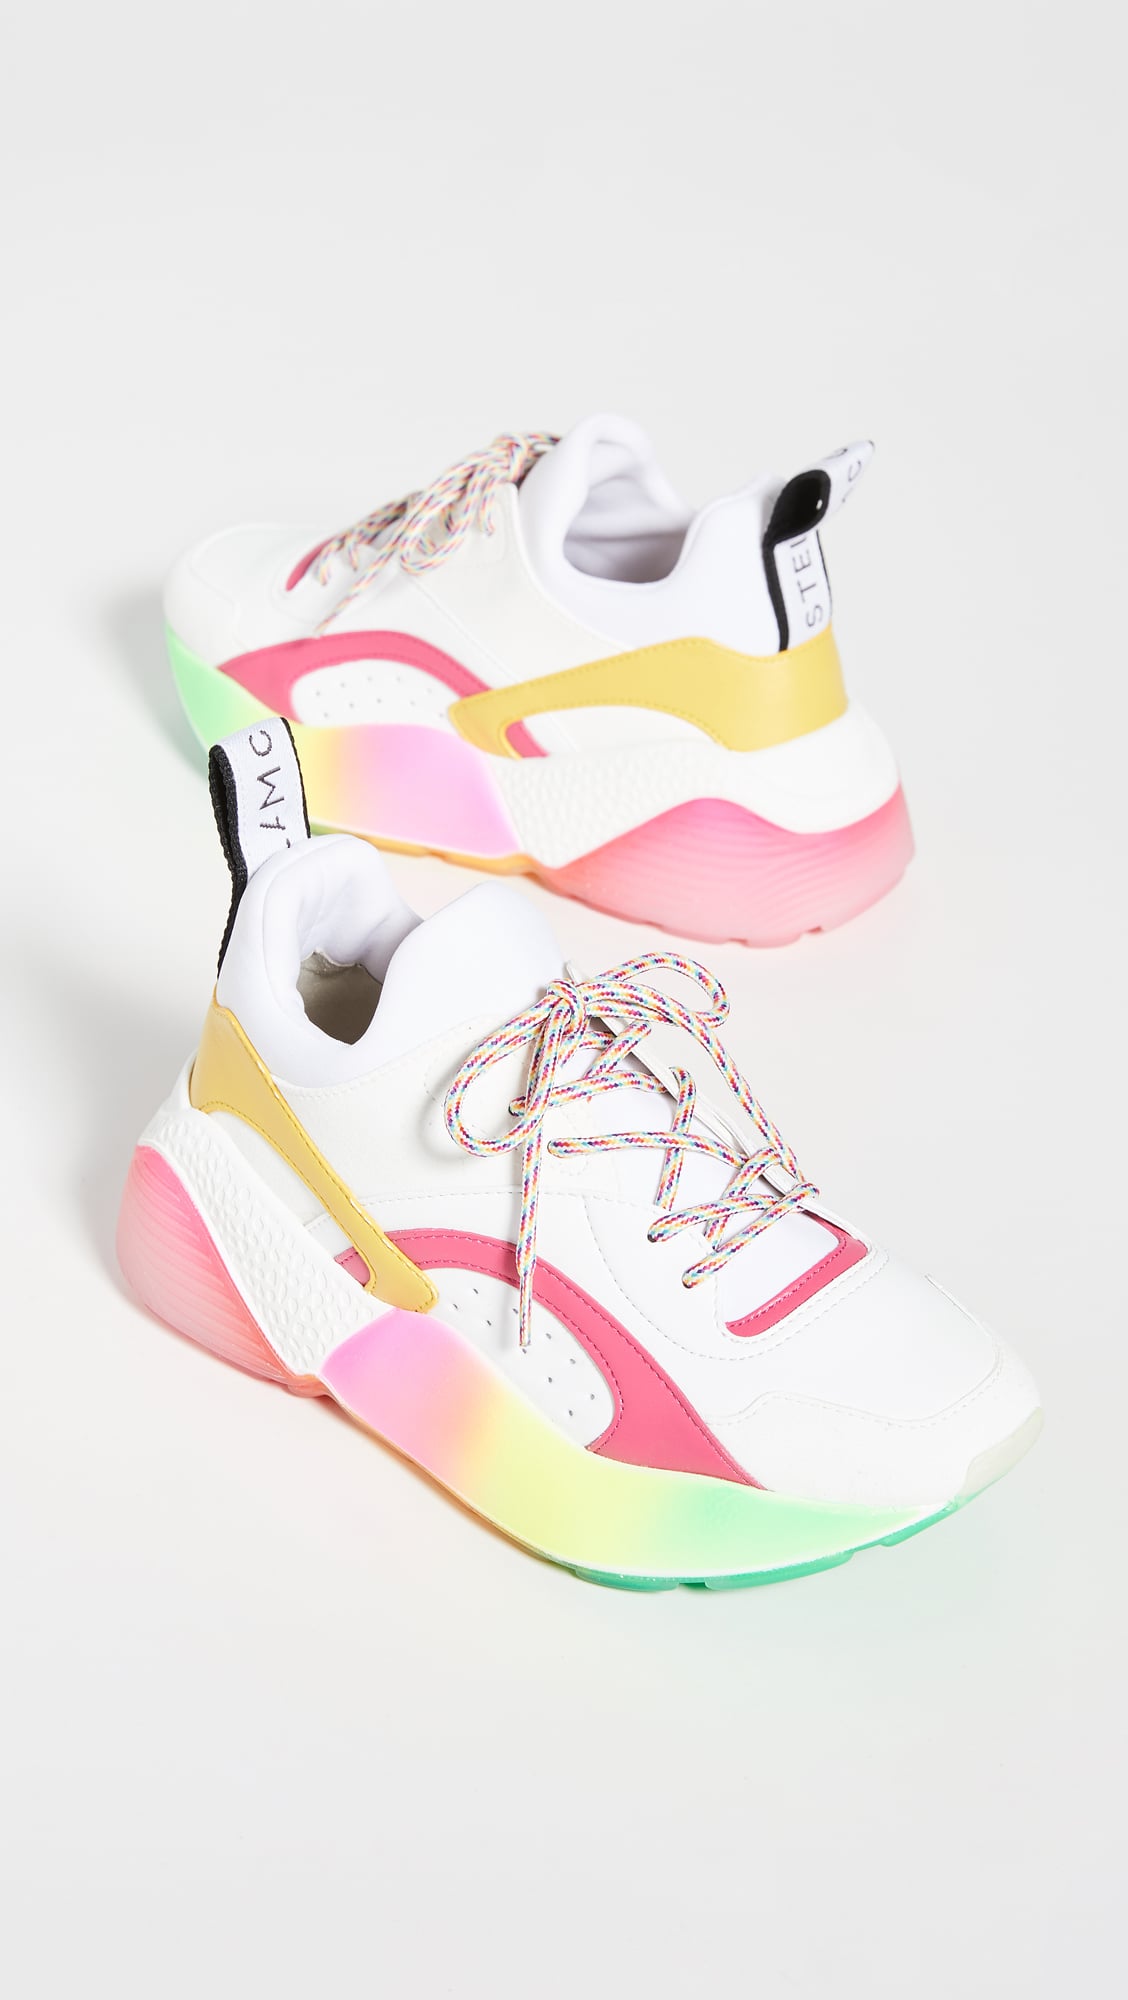 Stella McCartney Eclypse Sneakers | The 